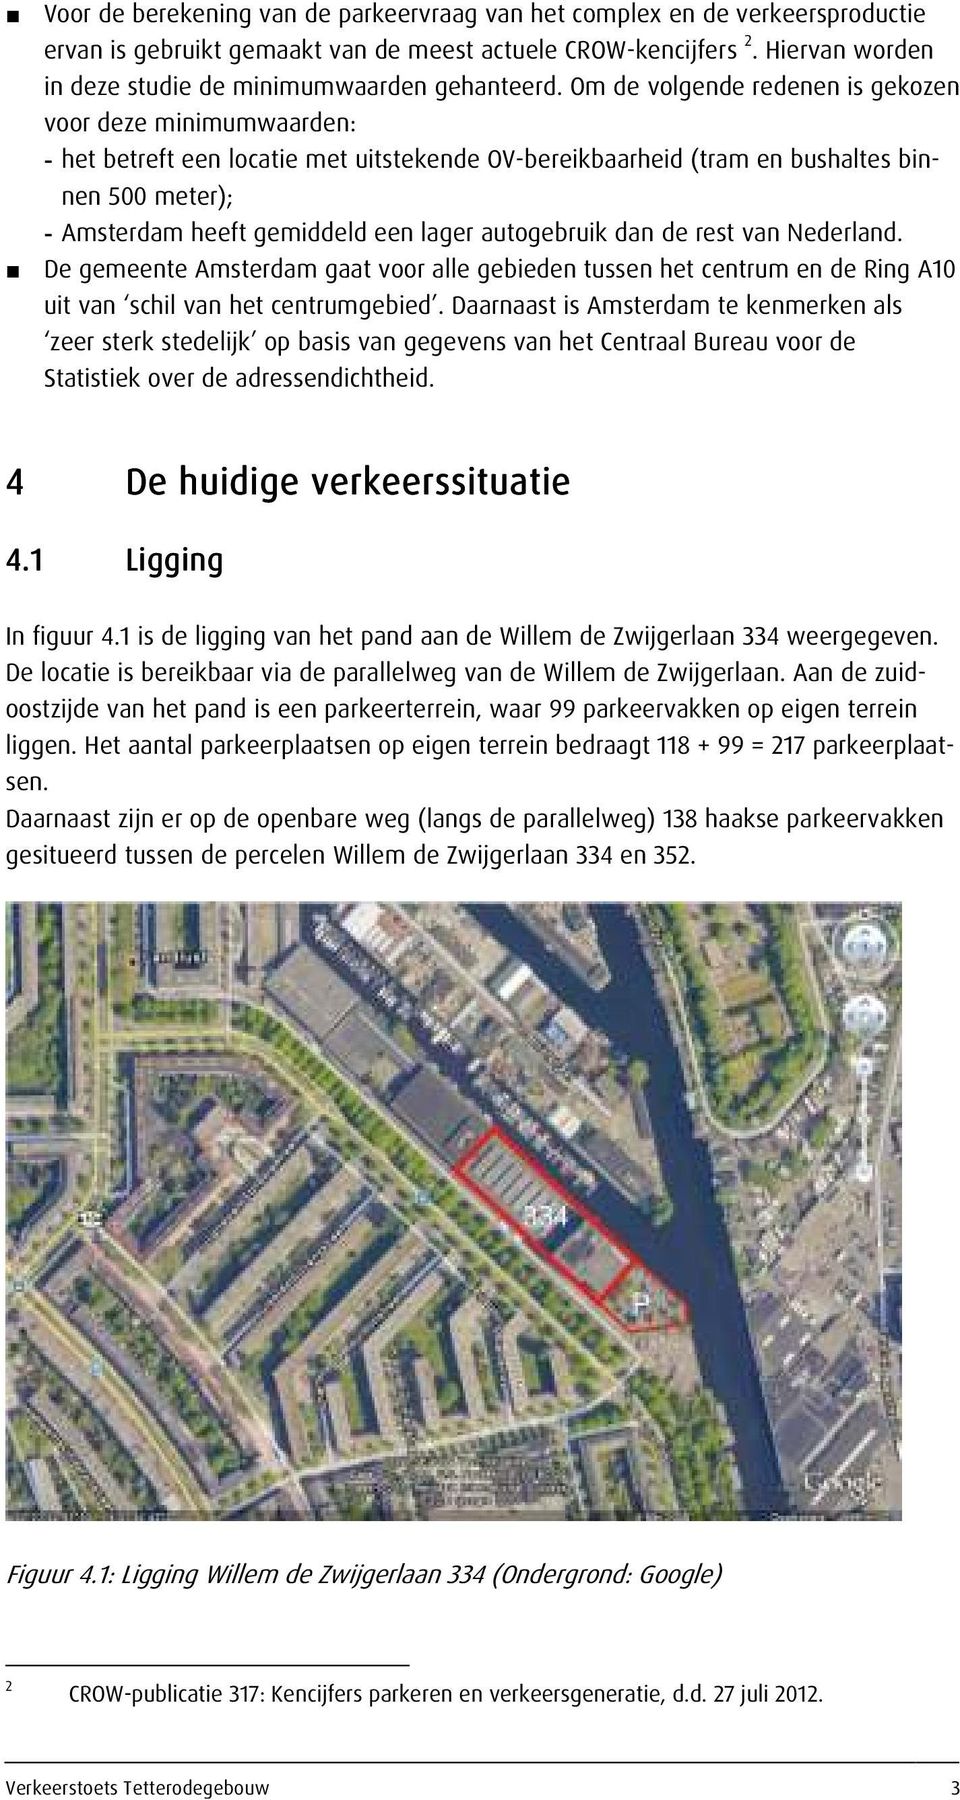 Om de volgende redenen is gekozen voor deze minimumwaarden: - het betreft een locatie met uitstekende OV-bereikbaarheid (tram en bushaltes binnen 500 meter); - Amsterdam heeft gemiddeld een lager